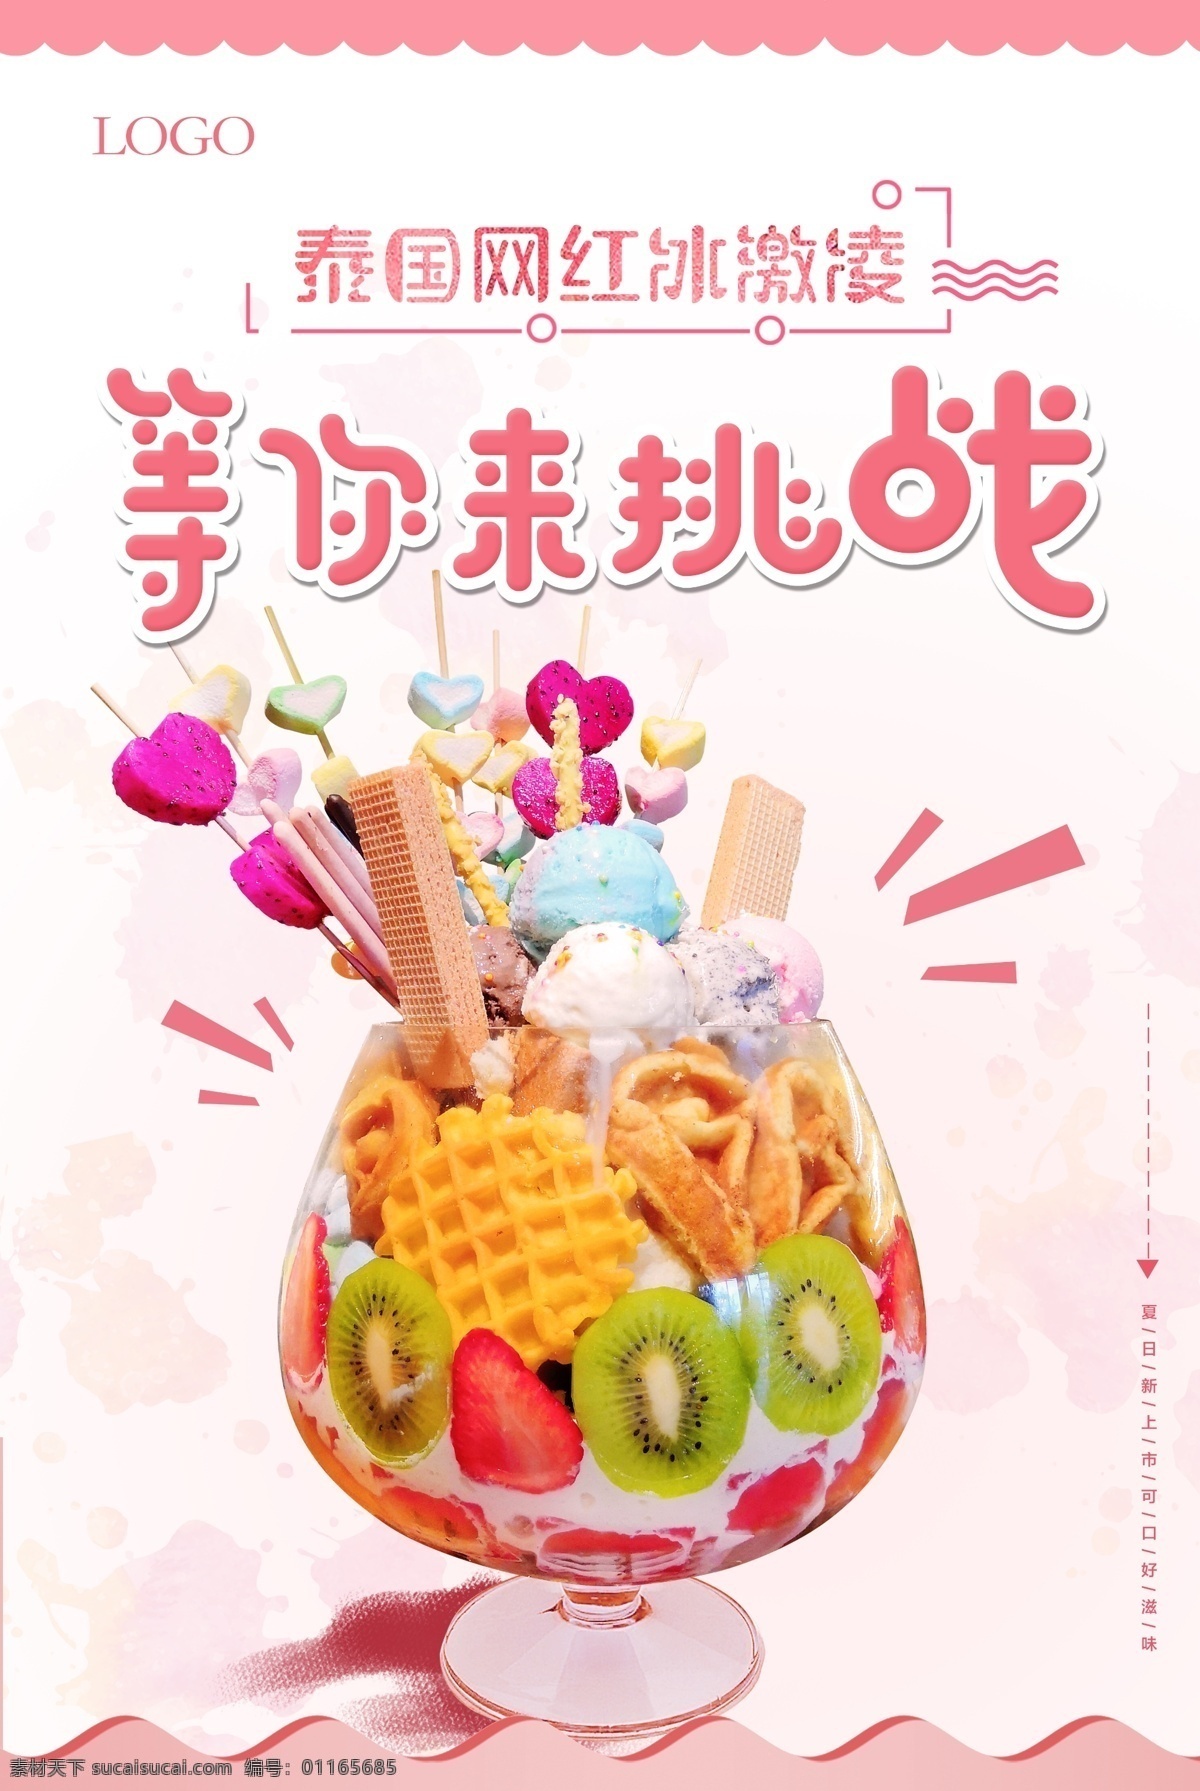 泰国 网 红 冰淇淋 泰国冰淇淋 冰激凌 挑战 网红 美食 海报 夏天 大杯冰淇淋 夏季 ps设计